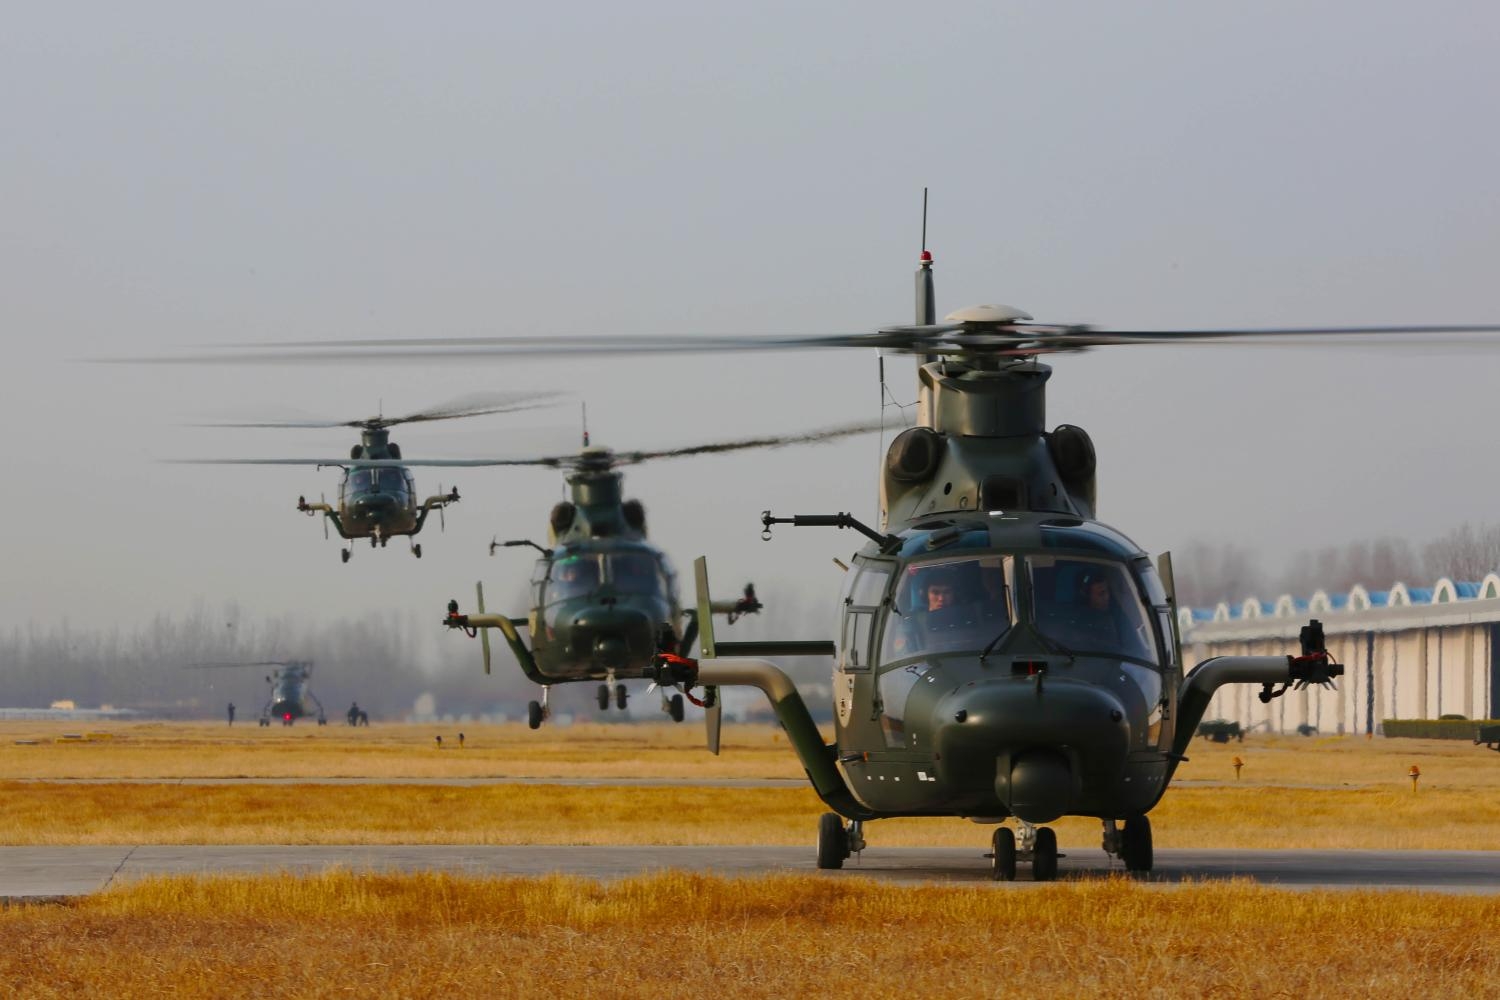 韩国展出最新国产武装直升机,和我国这一机型神似,这是巧合吗?